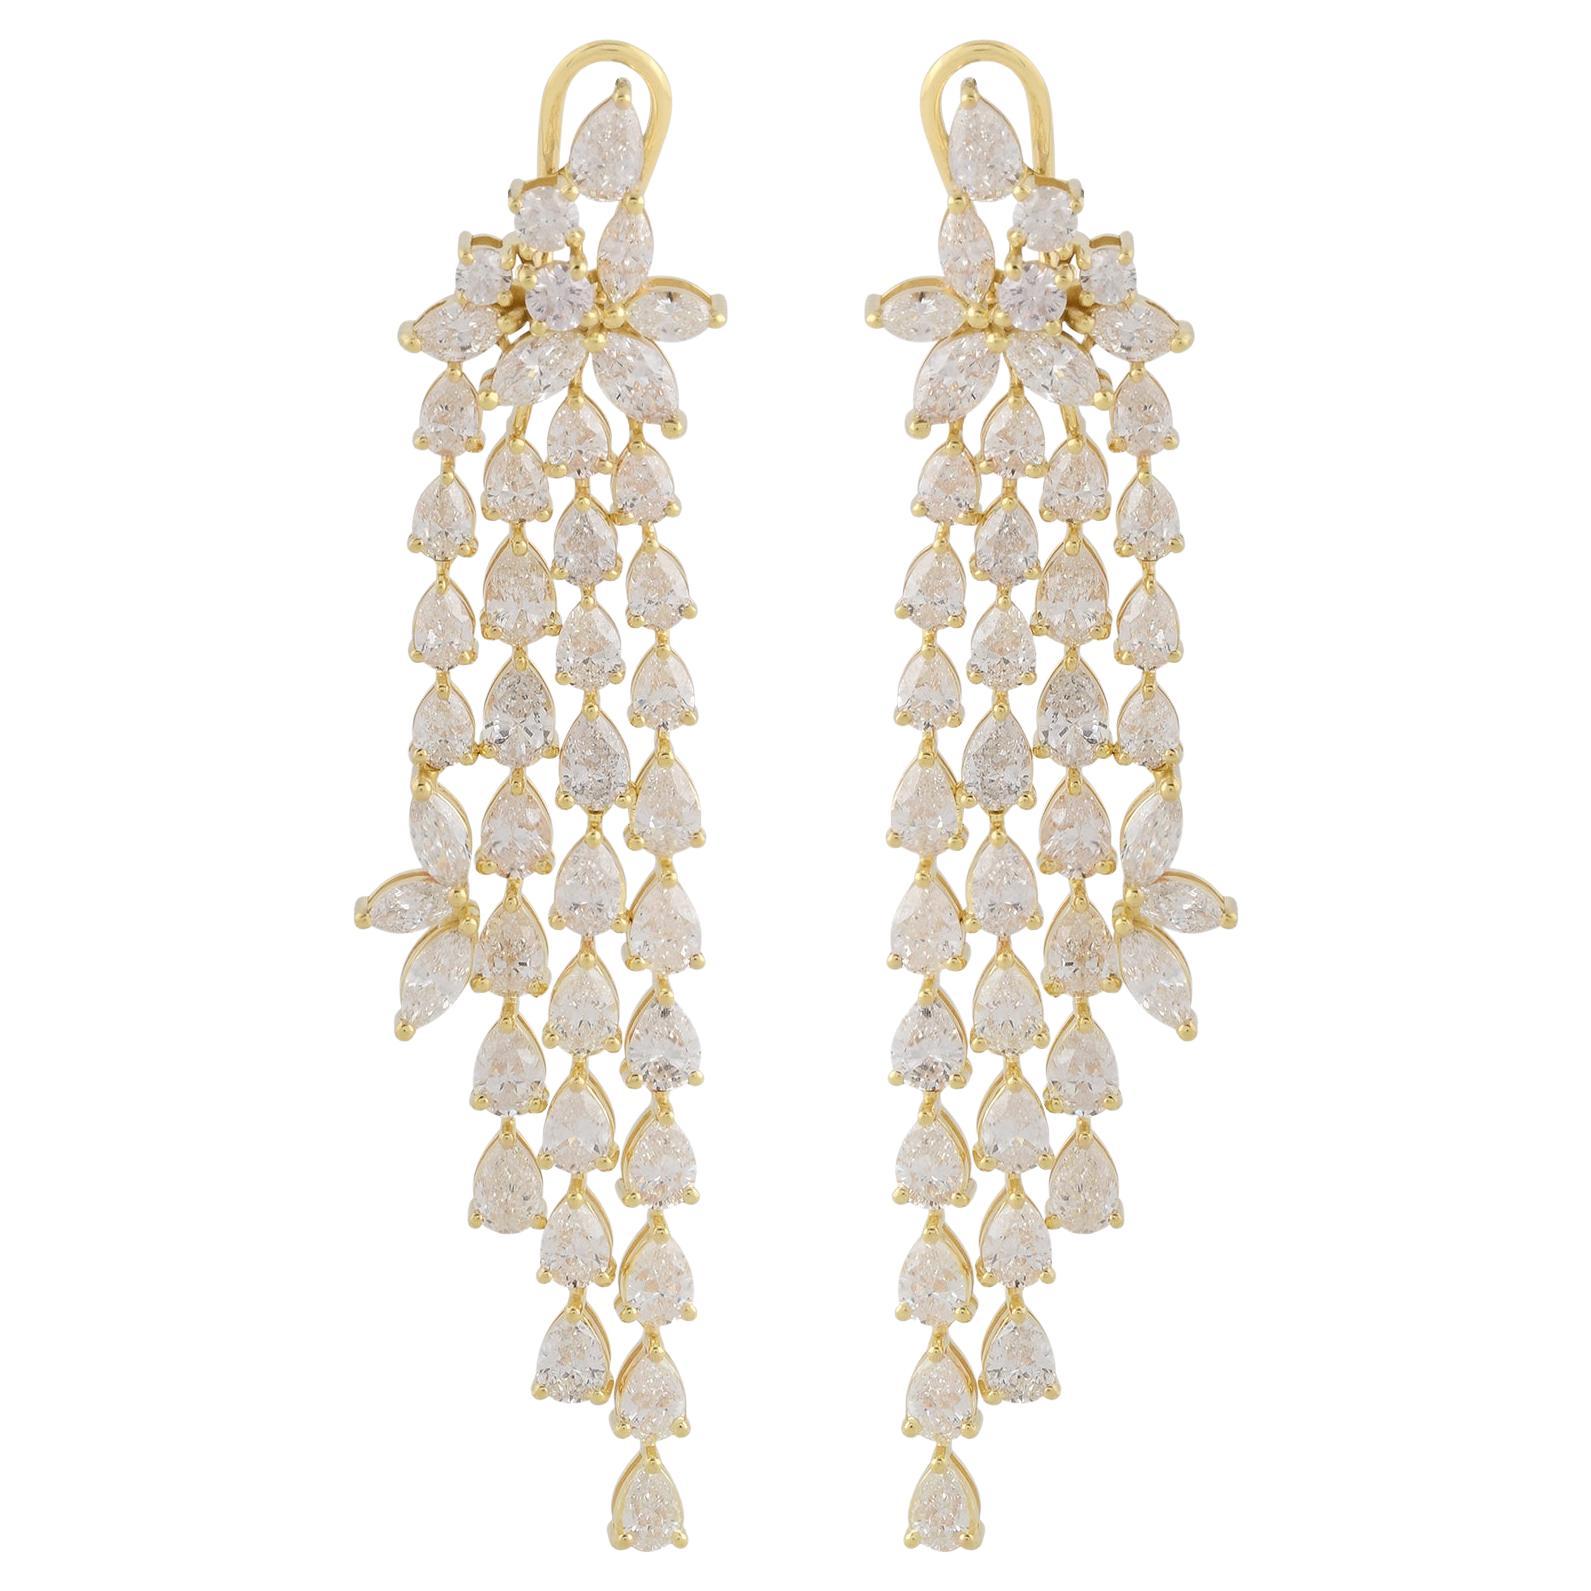 Pear Shape Diamond Chandelier Earrings 18 Karat Yellow Gold Handmade Jewelry